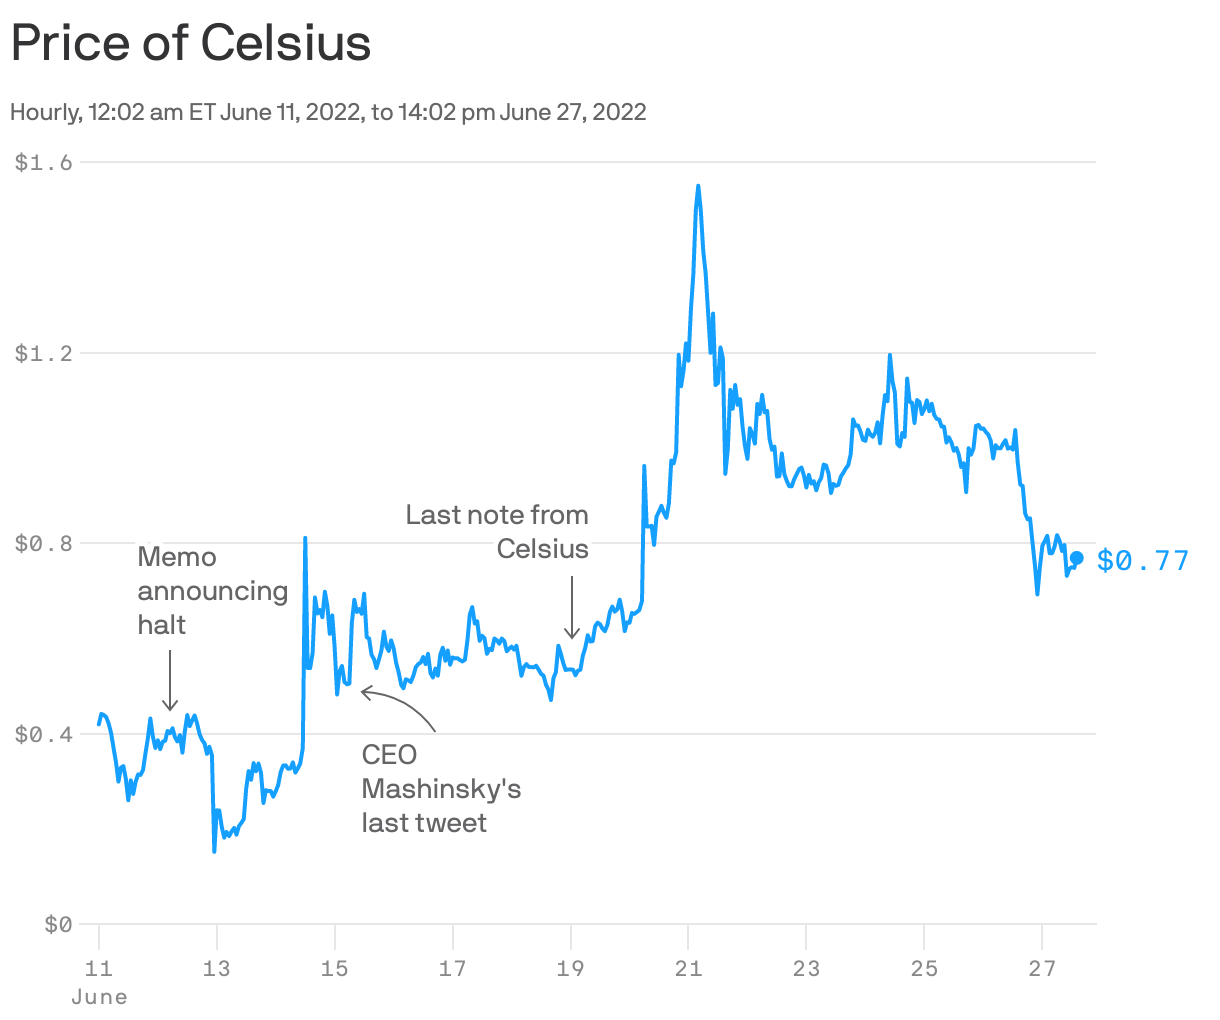 Price of Celsius